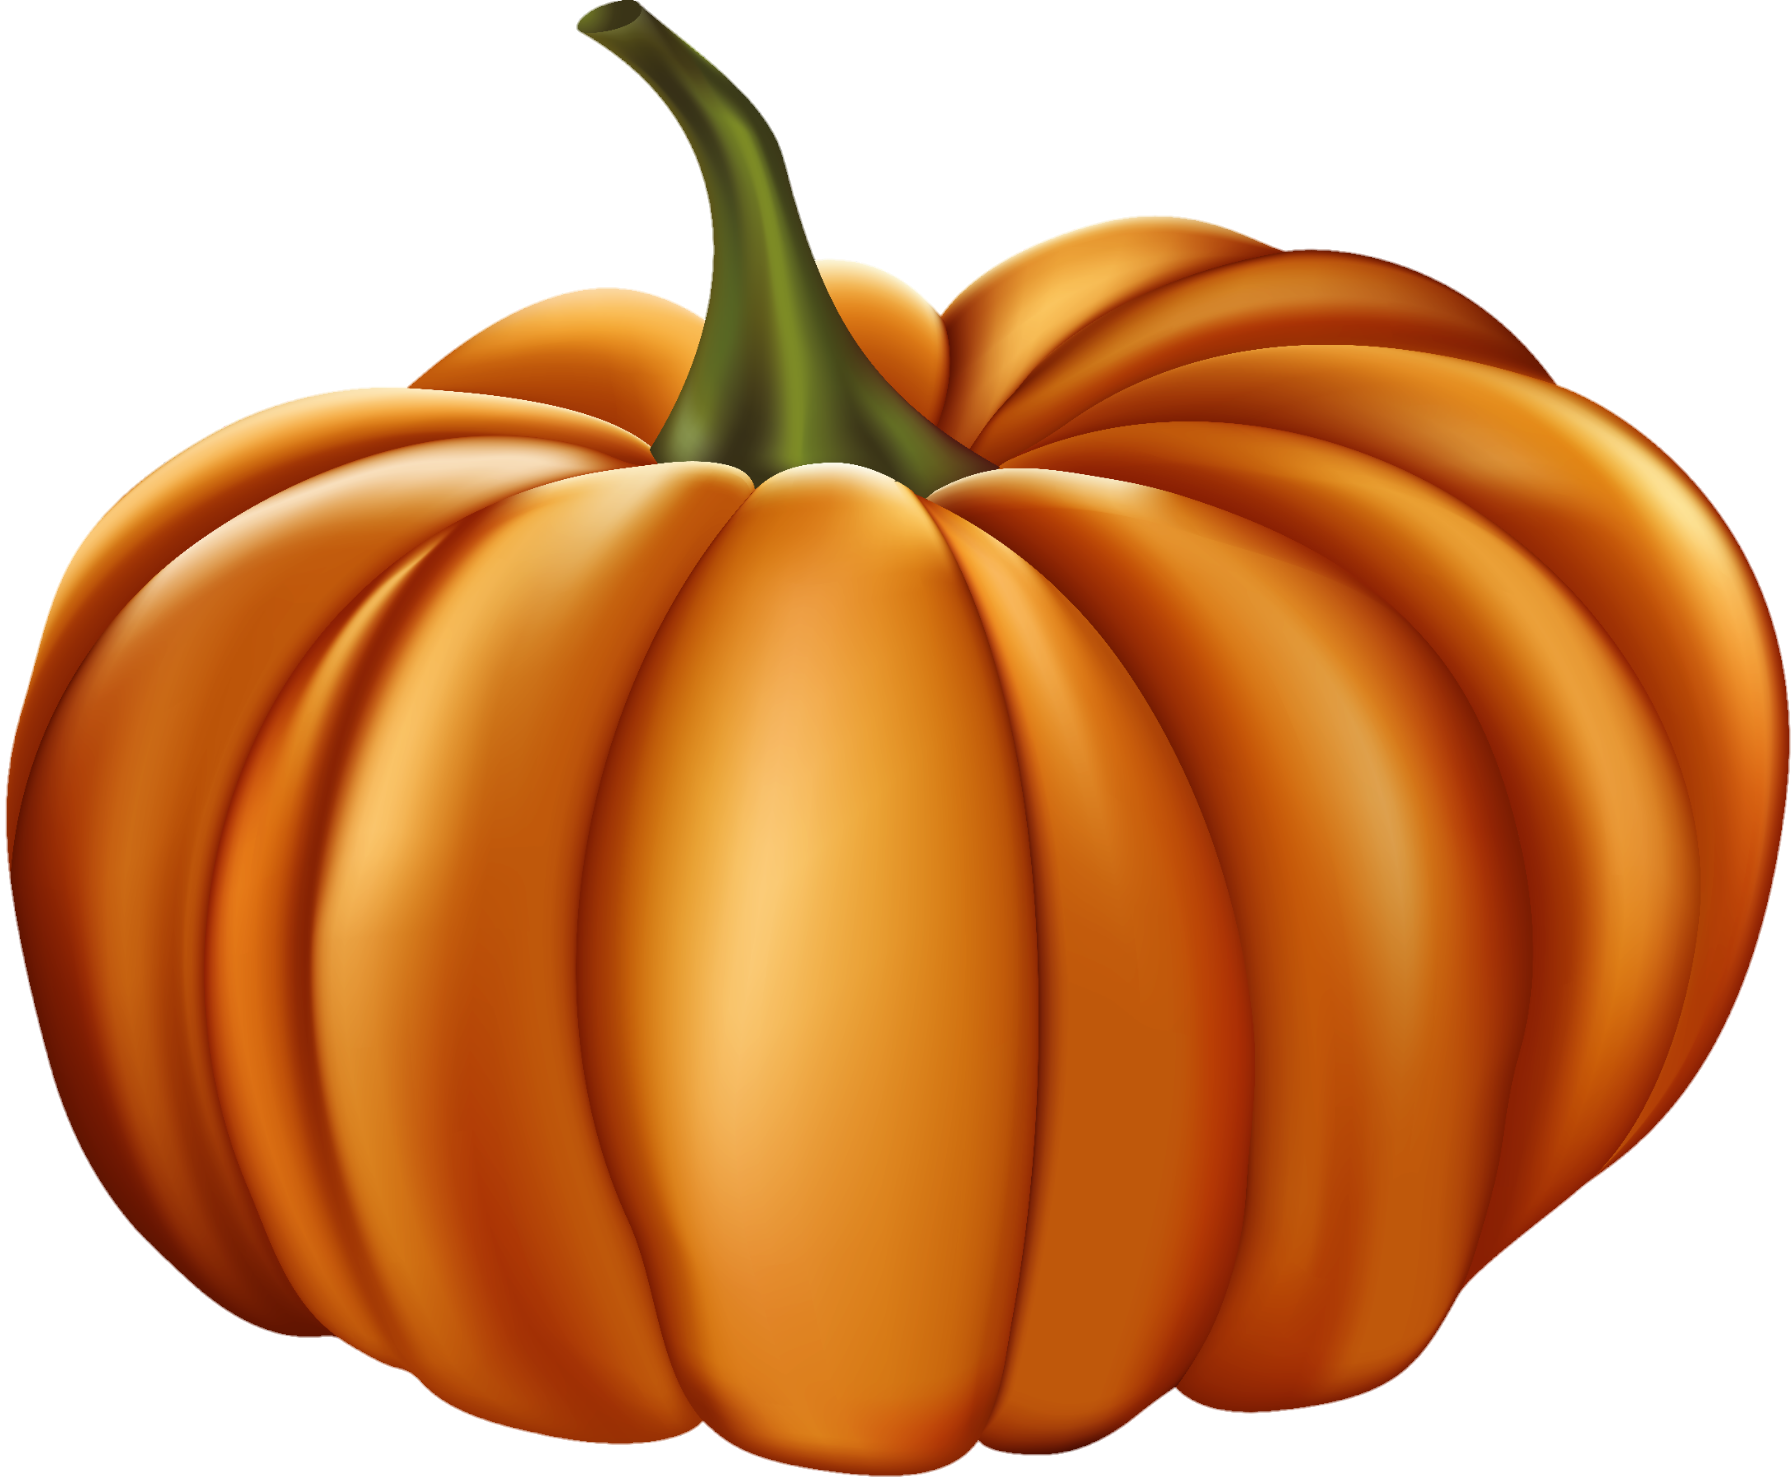 Pumpkin-11-1